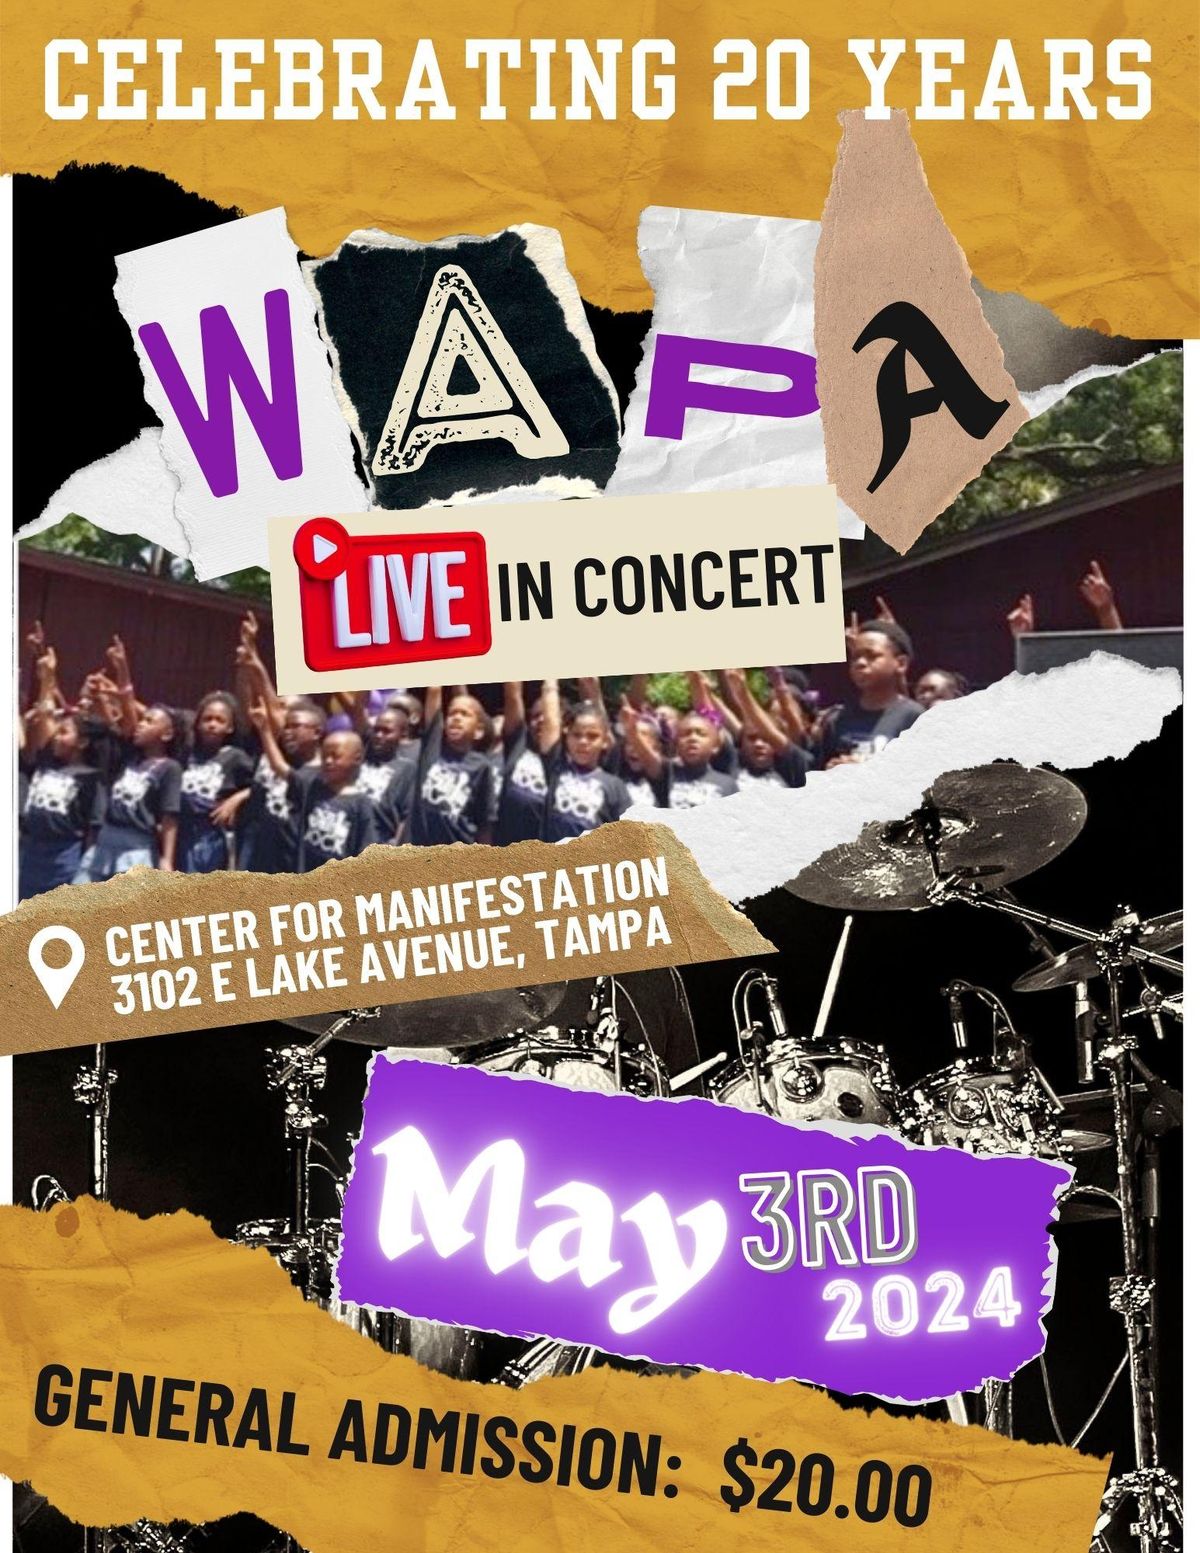 WAPA Live in Concert